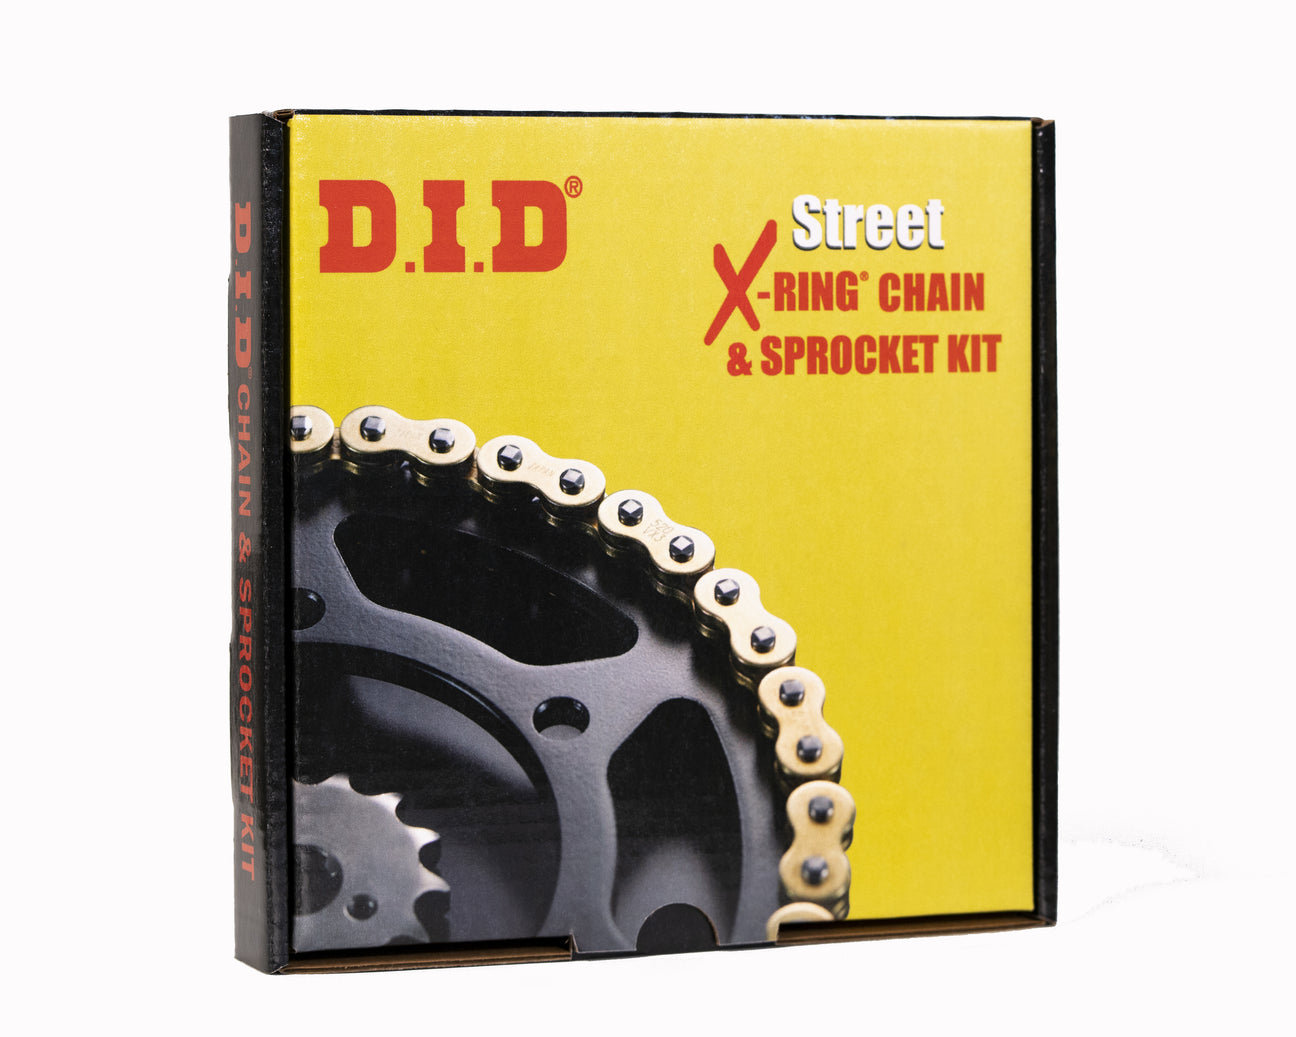 Street Chain Kits